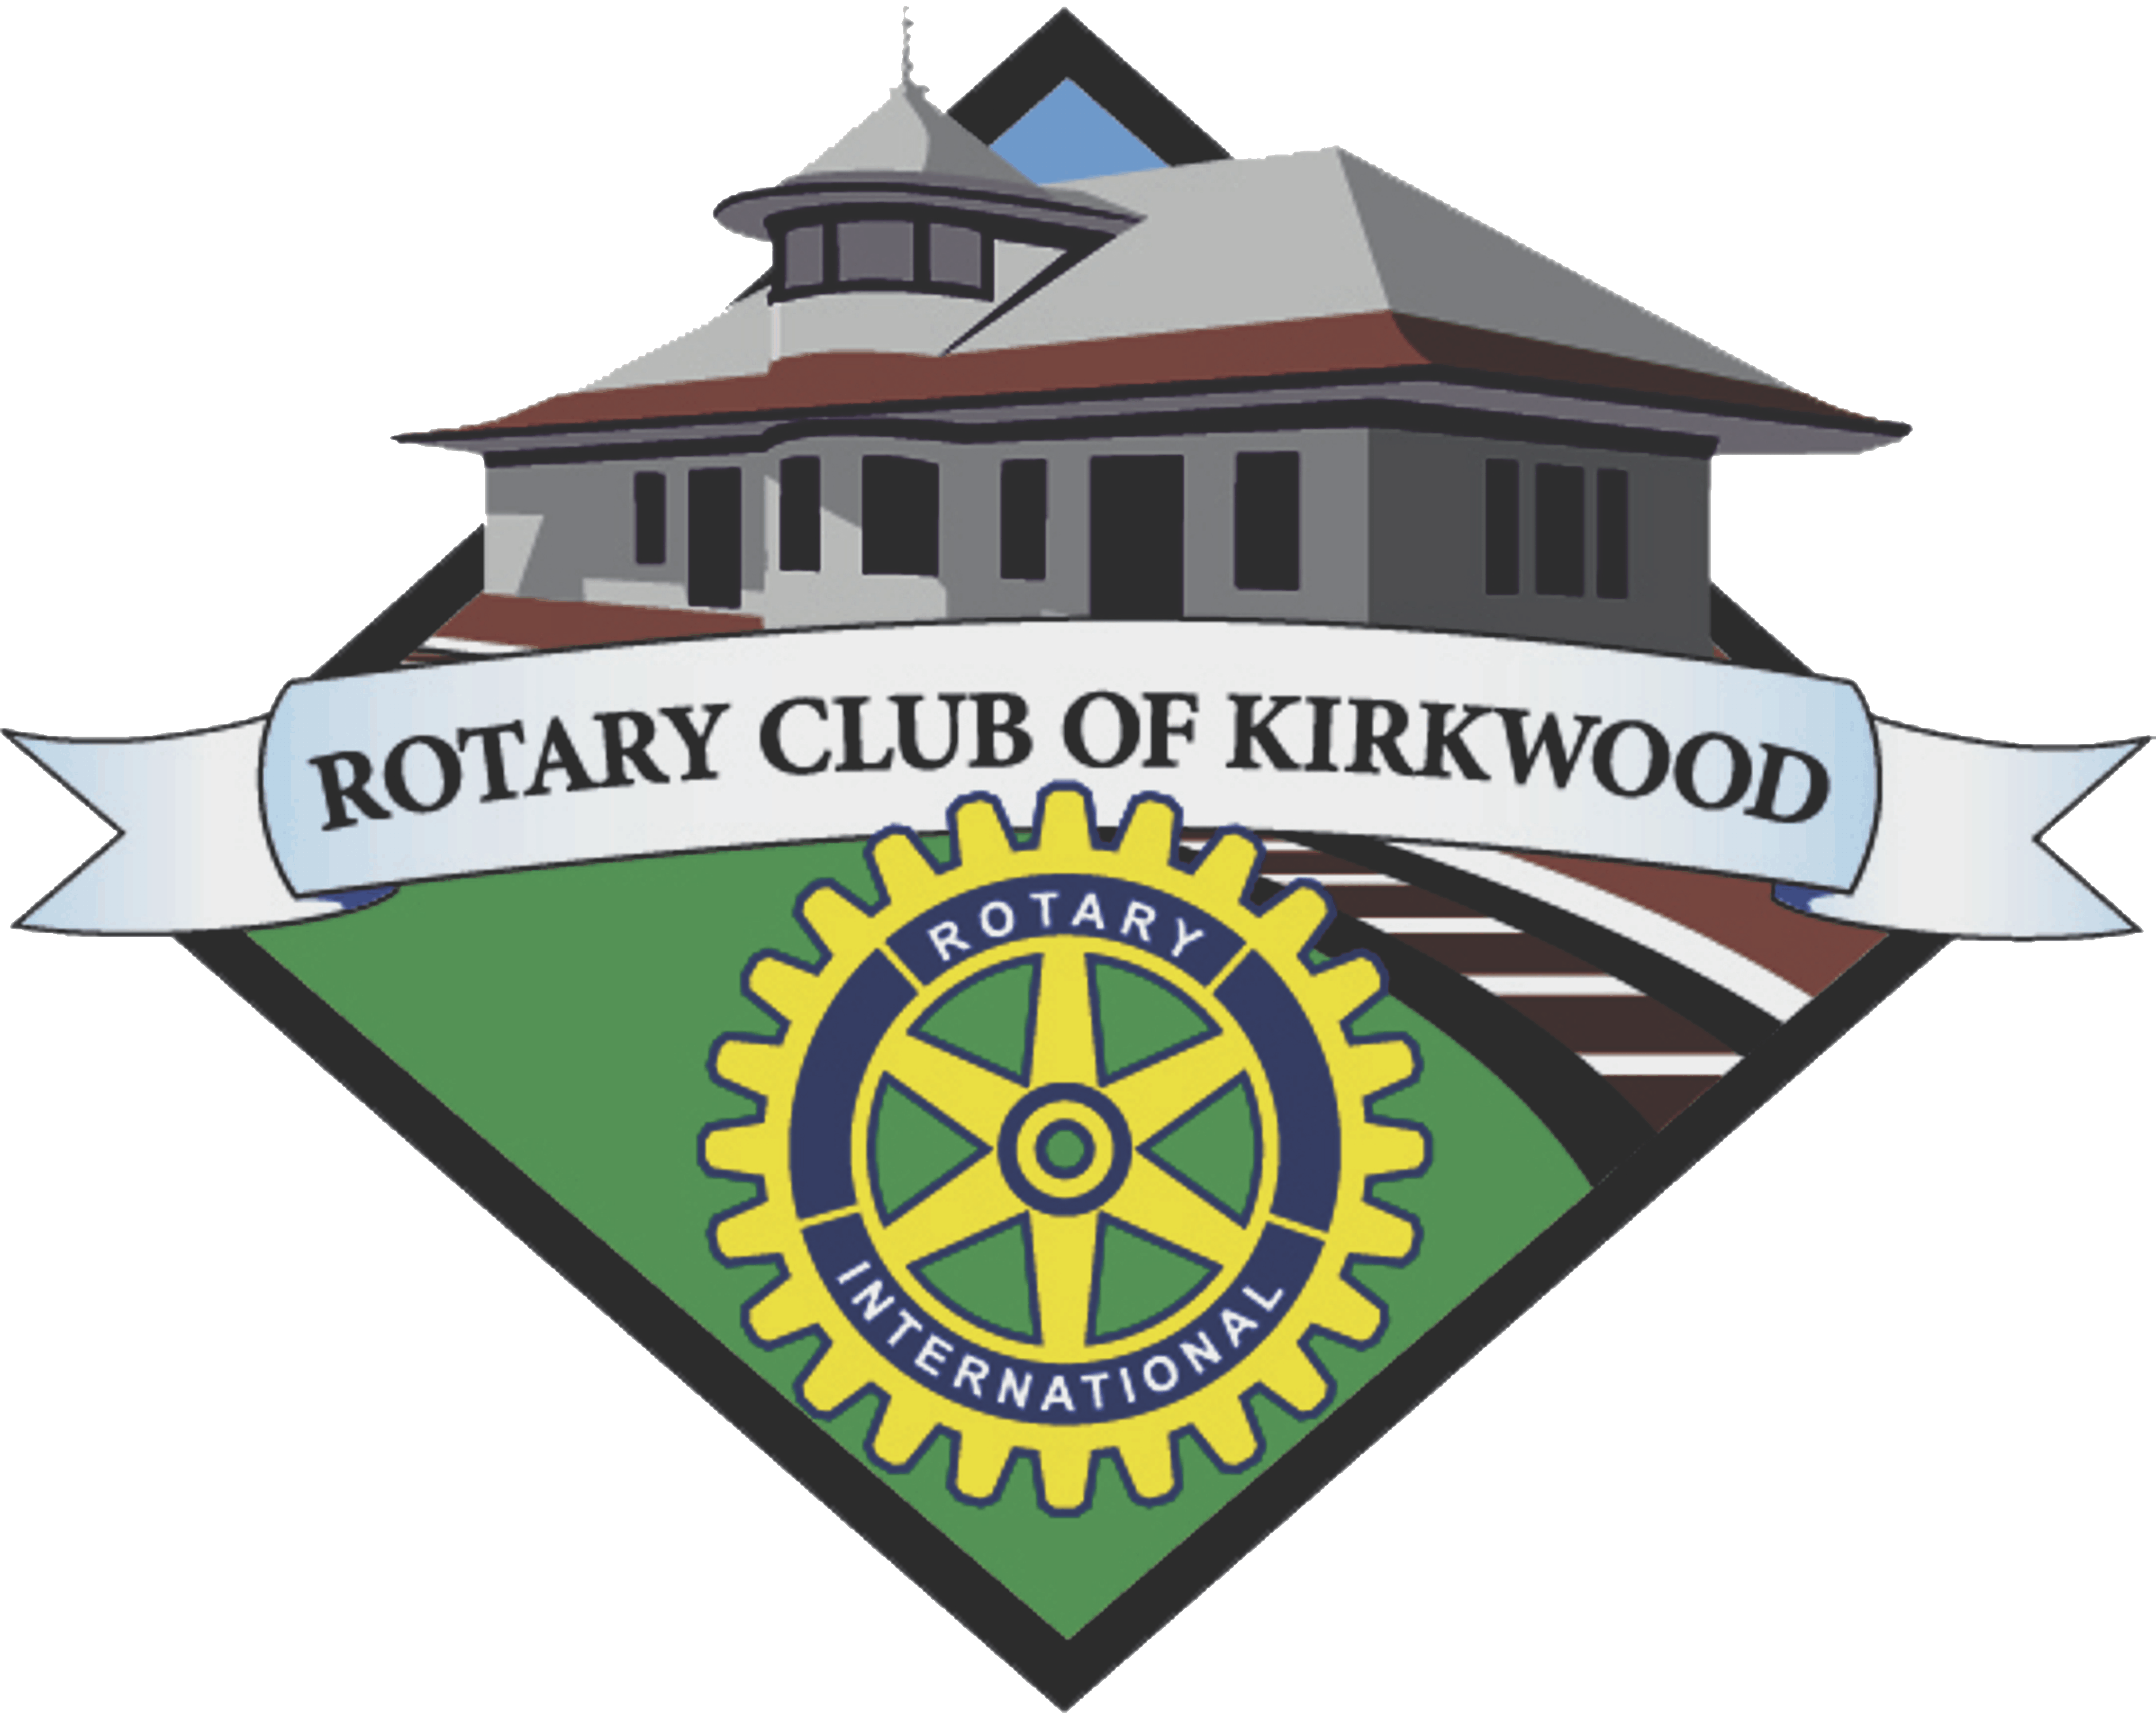 Kirkwood logo